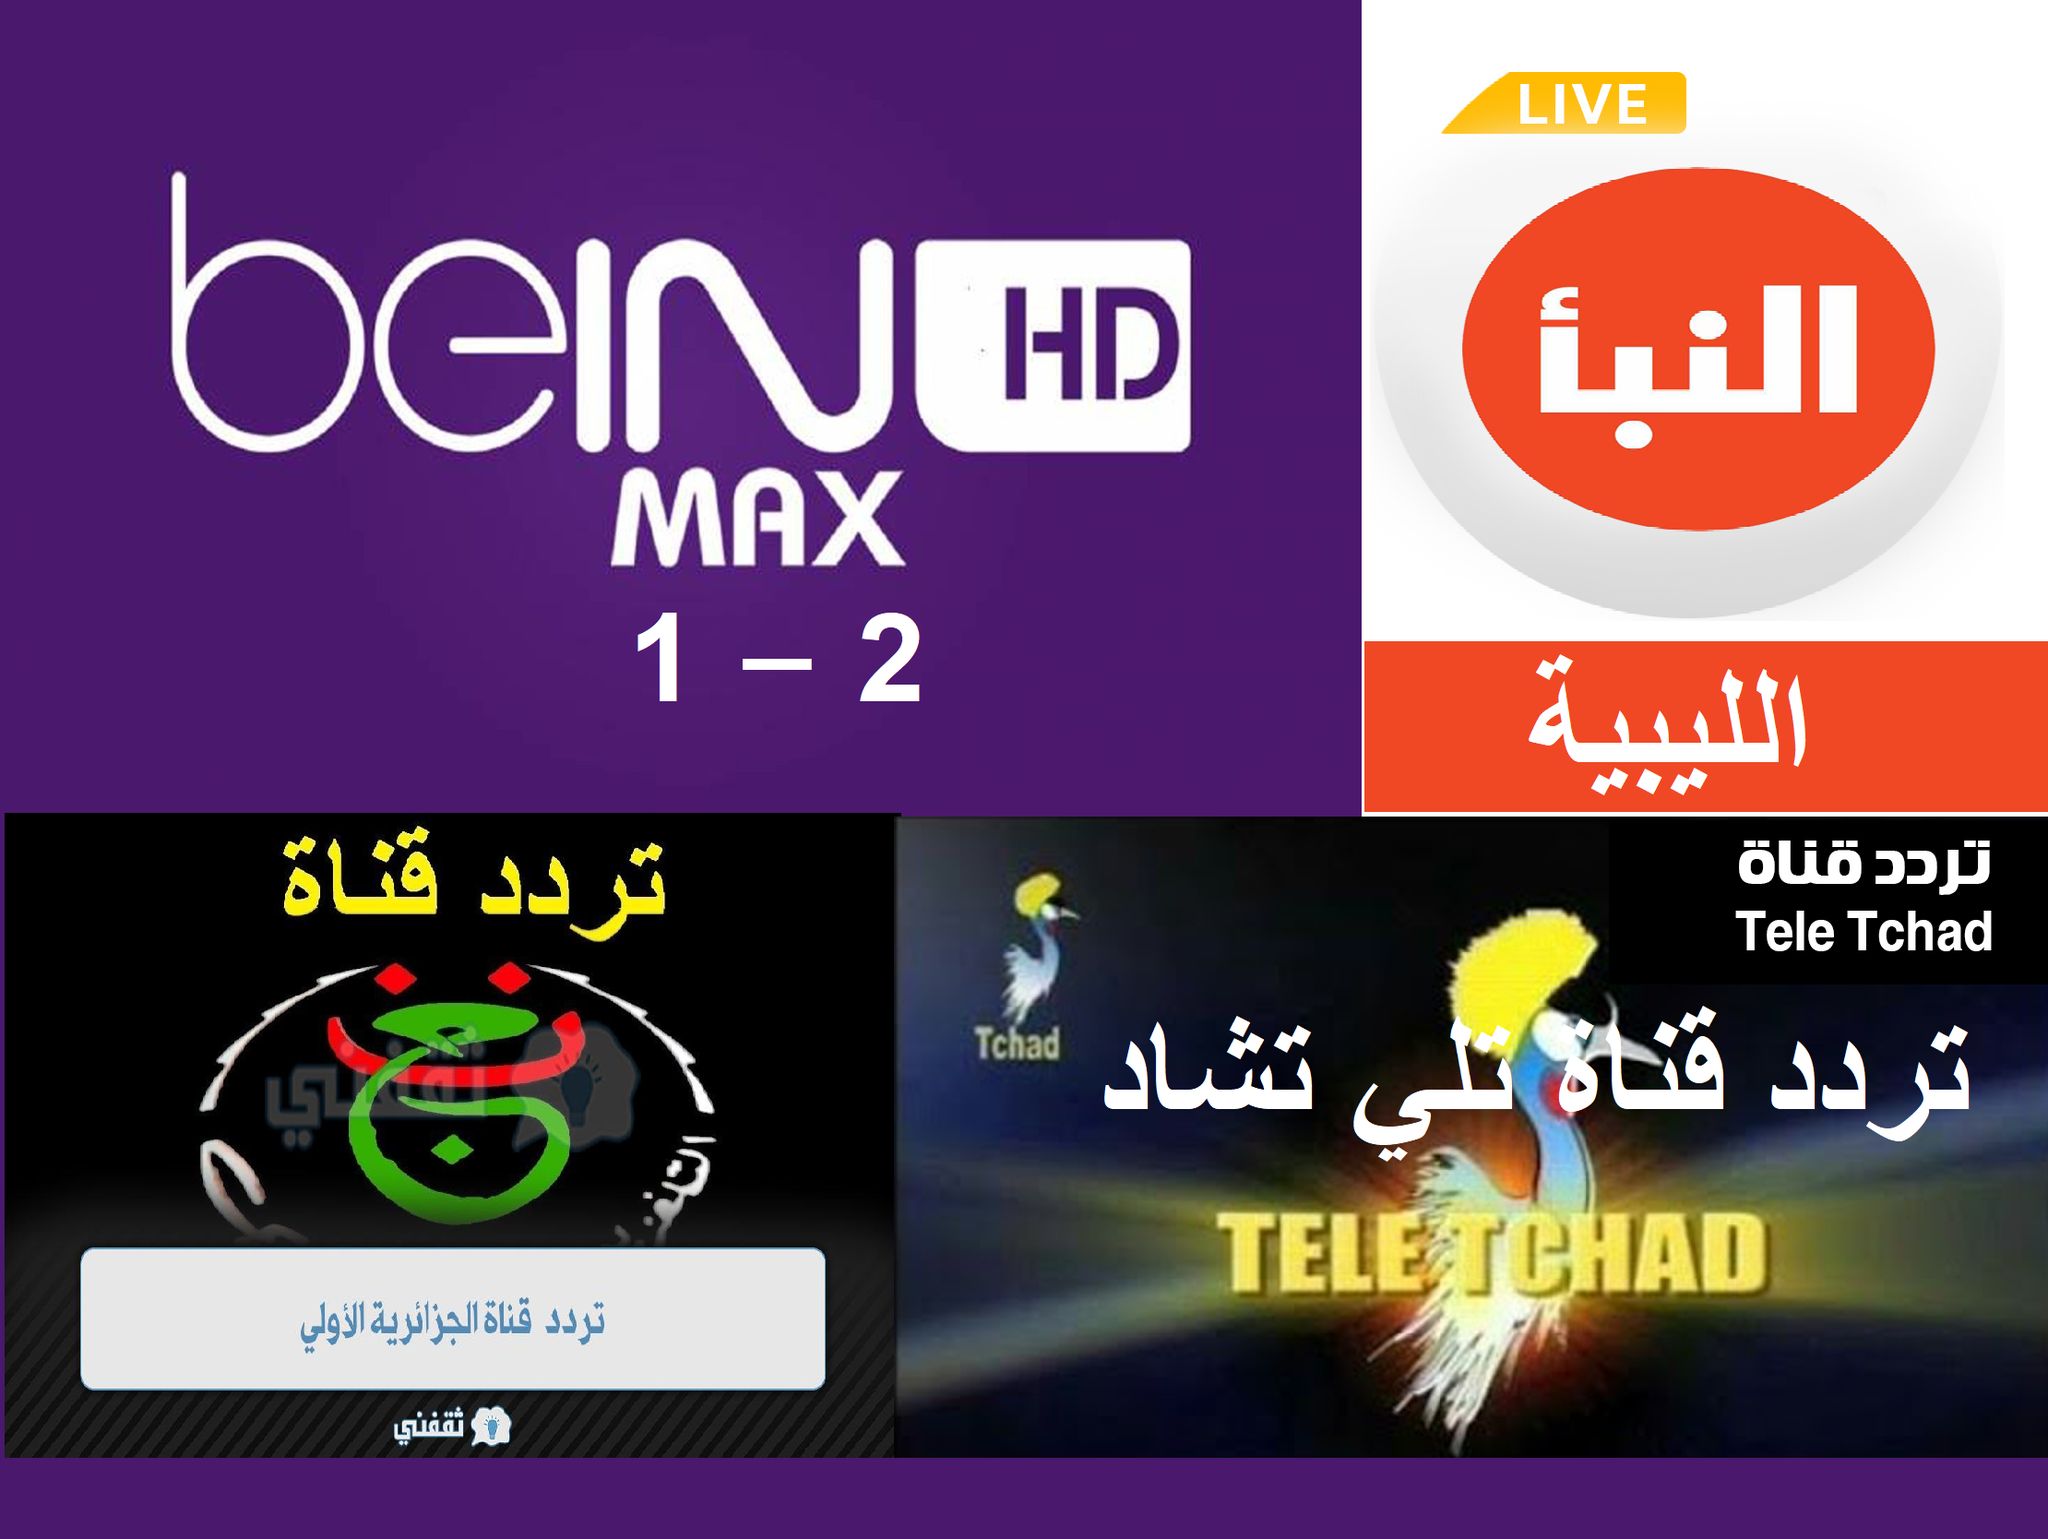 تردد قناة بي إن سبورت ماكس الأولى - الثانية (beIN Sports HD 1-2 Max) نايل سات - عربسات